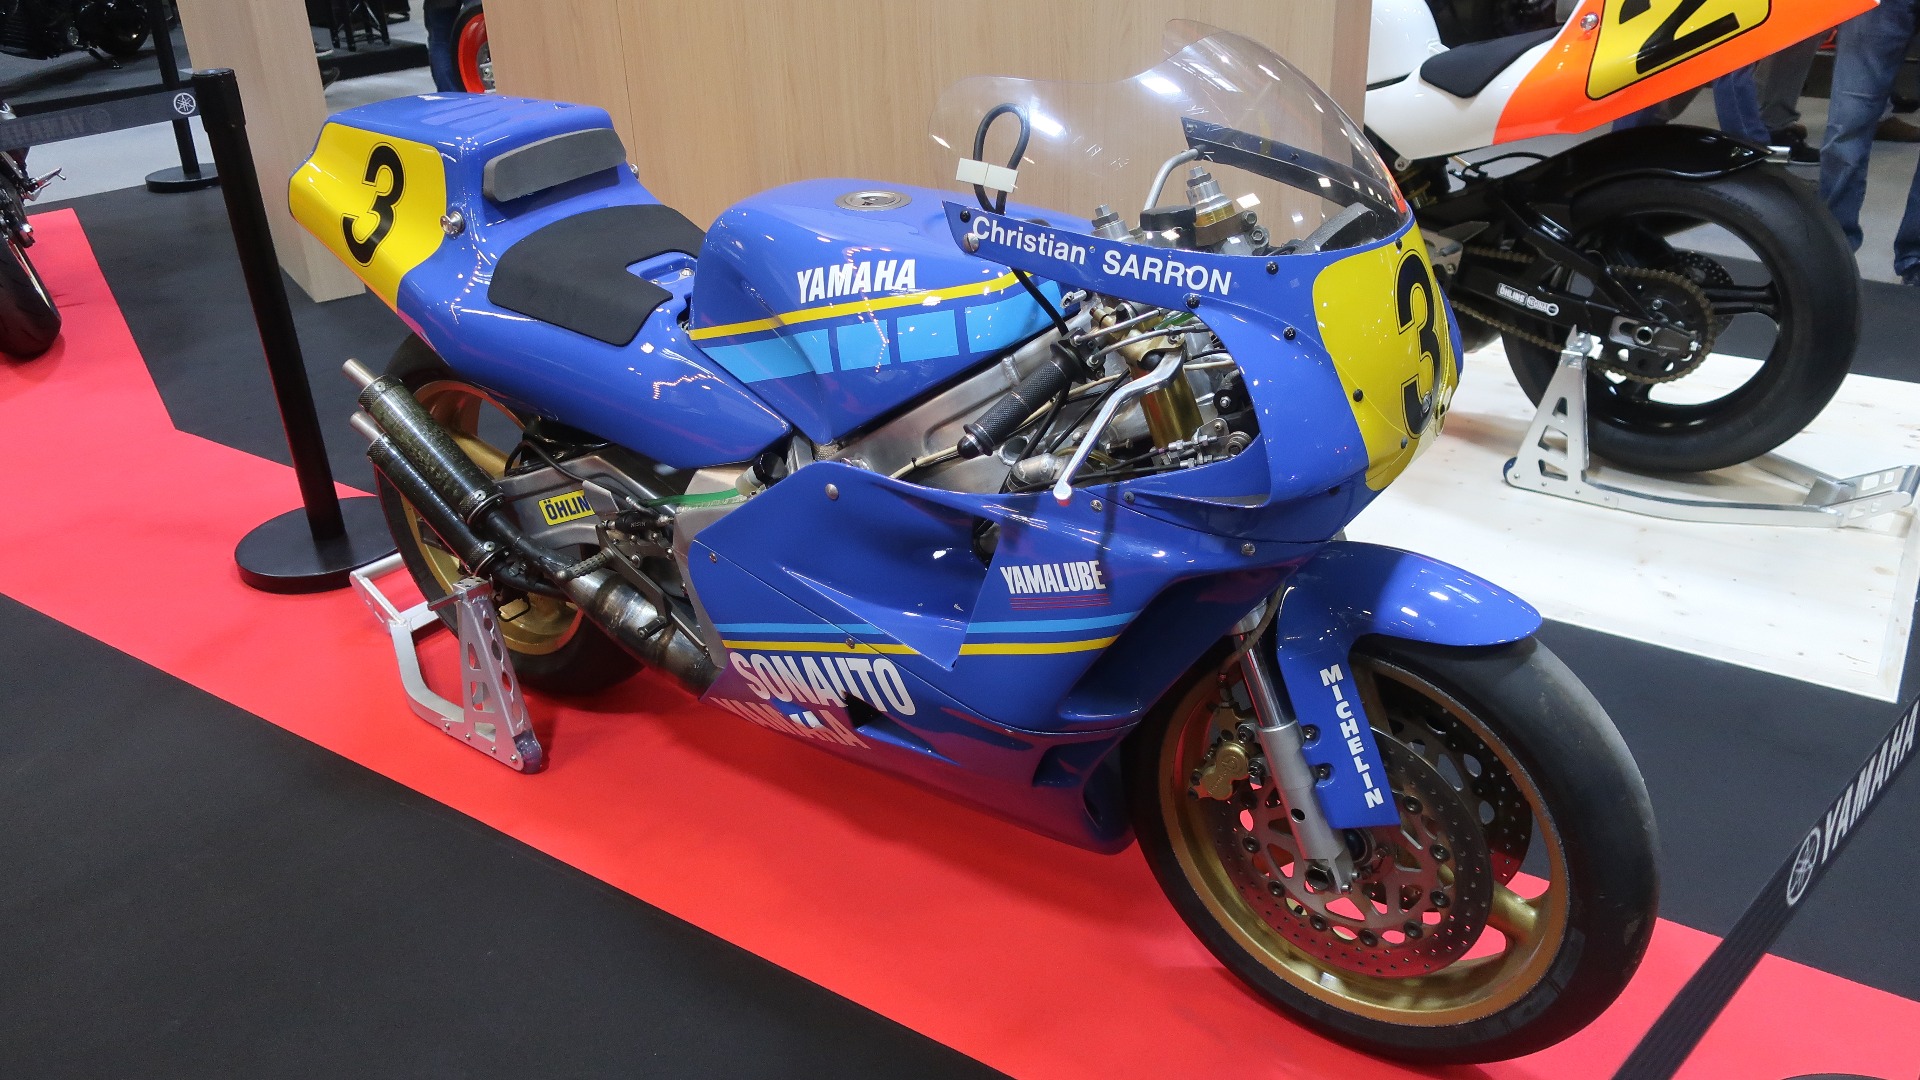 TIl årets messe hadde motorsykler fått et eget område. Her Christian Sarron sin 1989 Yamaha YZR500.